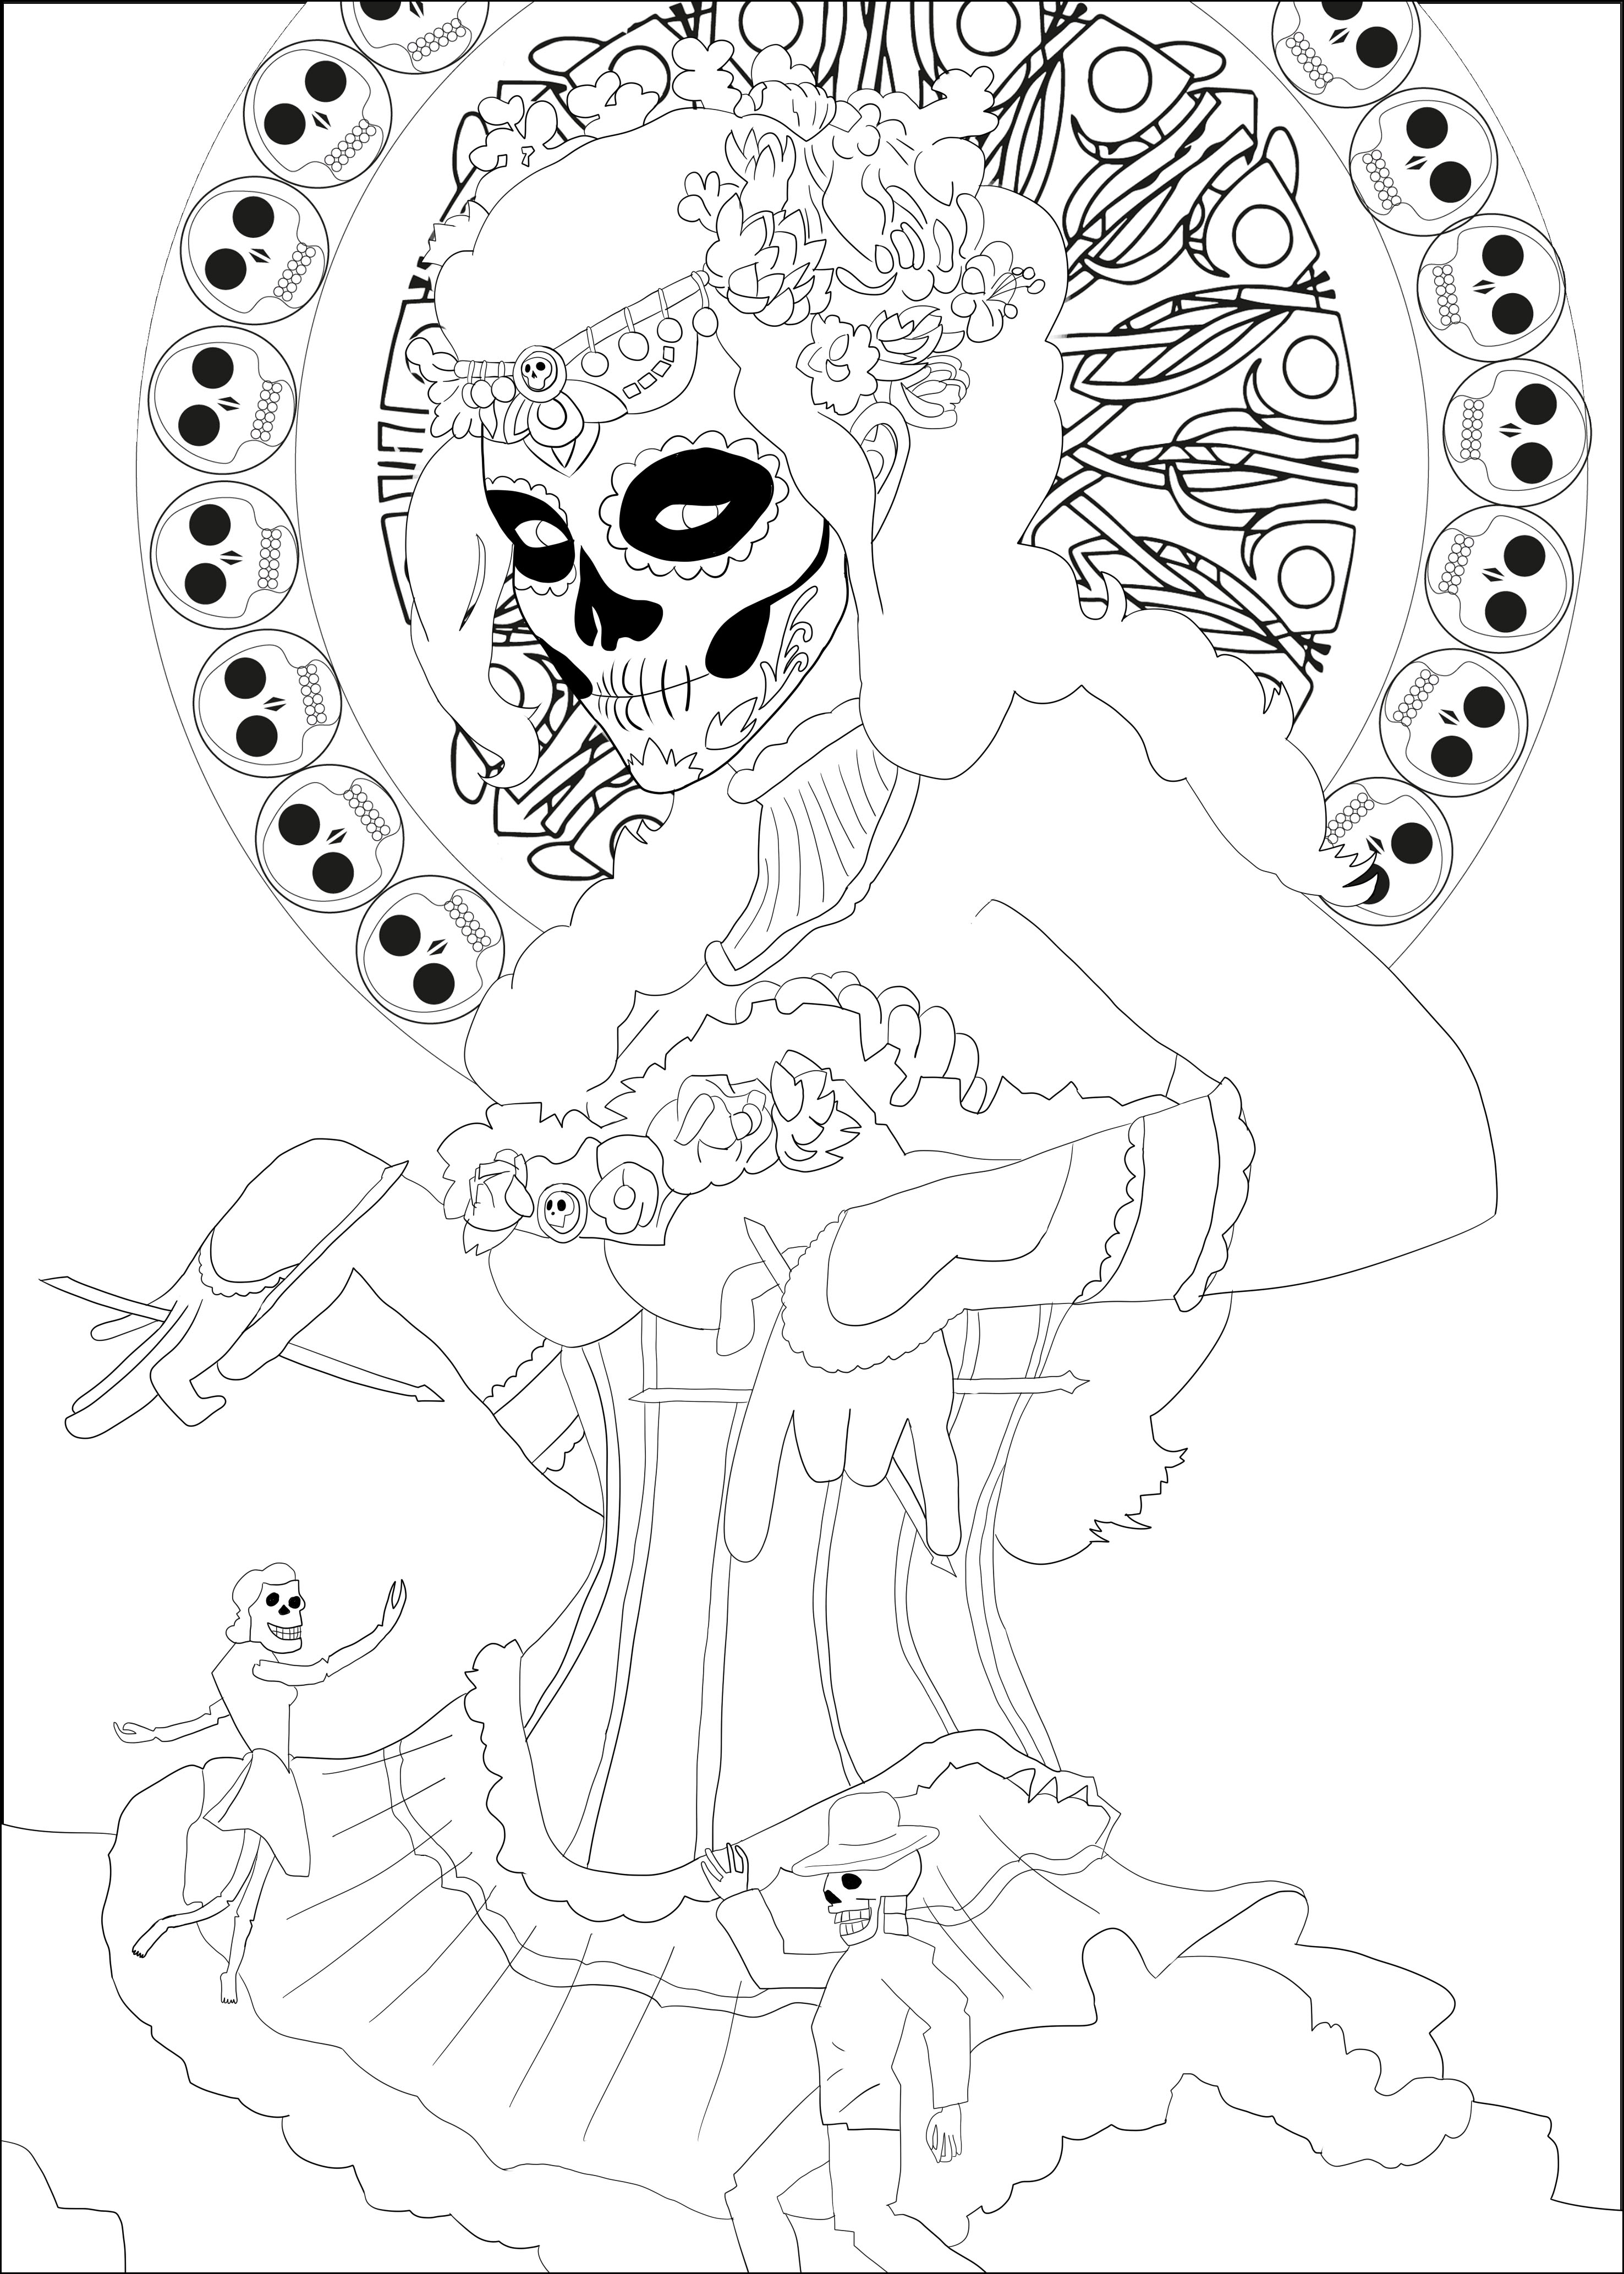 Coloring page inspired by the Mexican celebration 'Día de los Muertos'